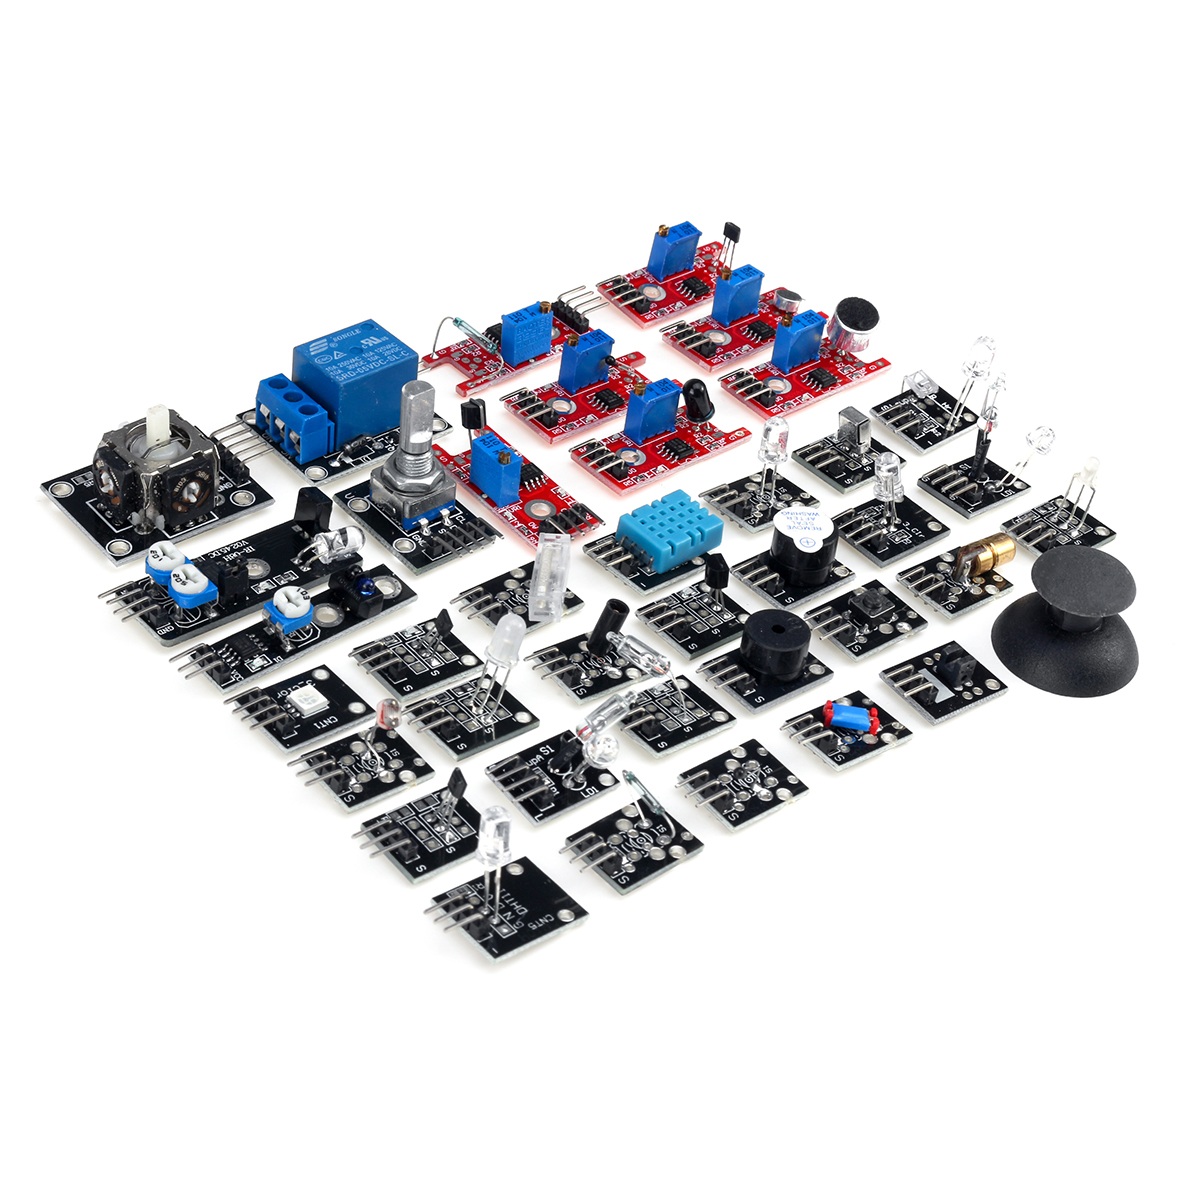 45-IN-137-IN-1-Sensor-Module-Starter-Kits-Set-For-Arduino-Raspberry-Pi-Education-Bag-Package-1619901-5